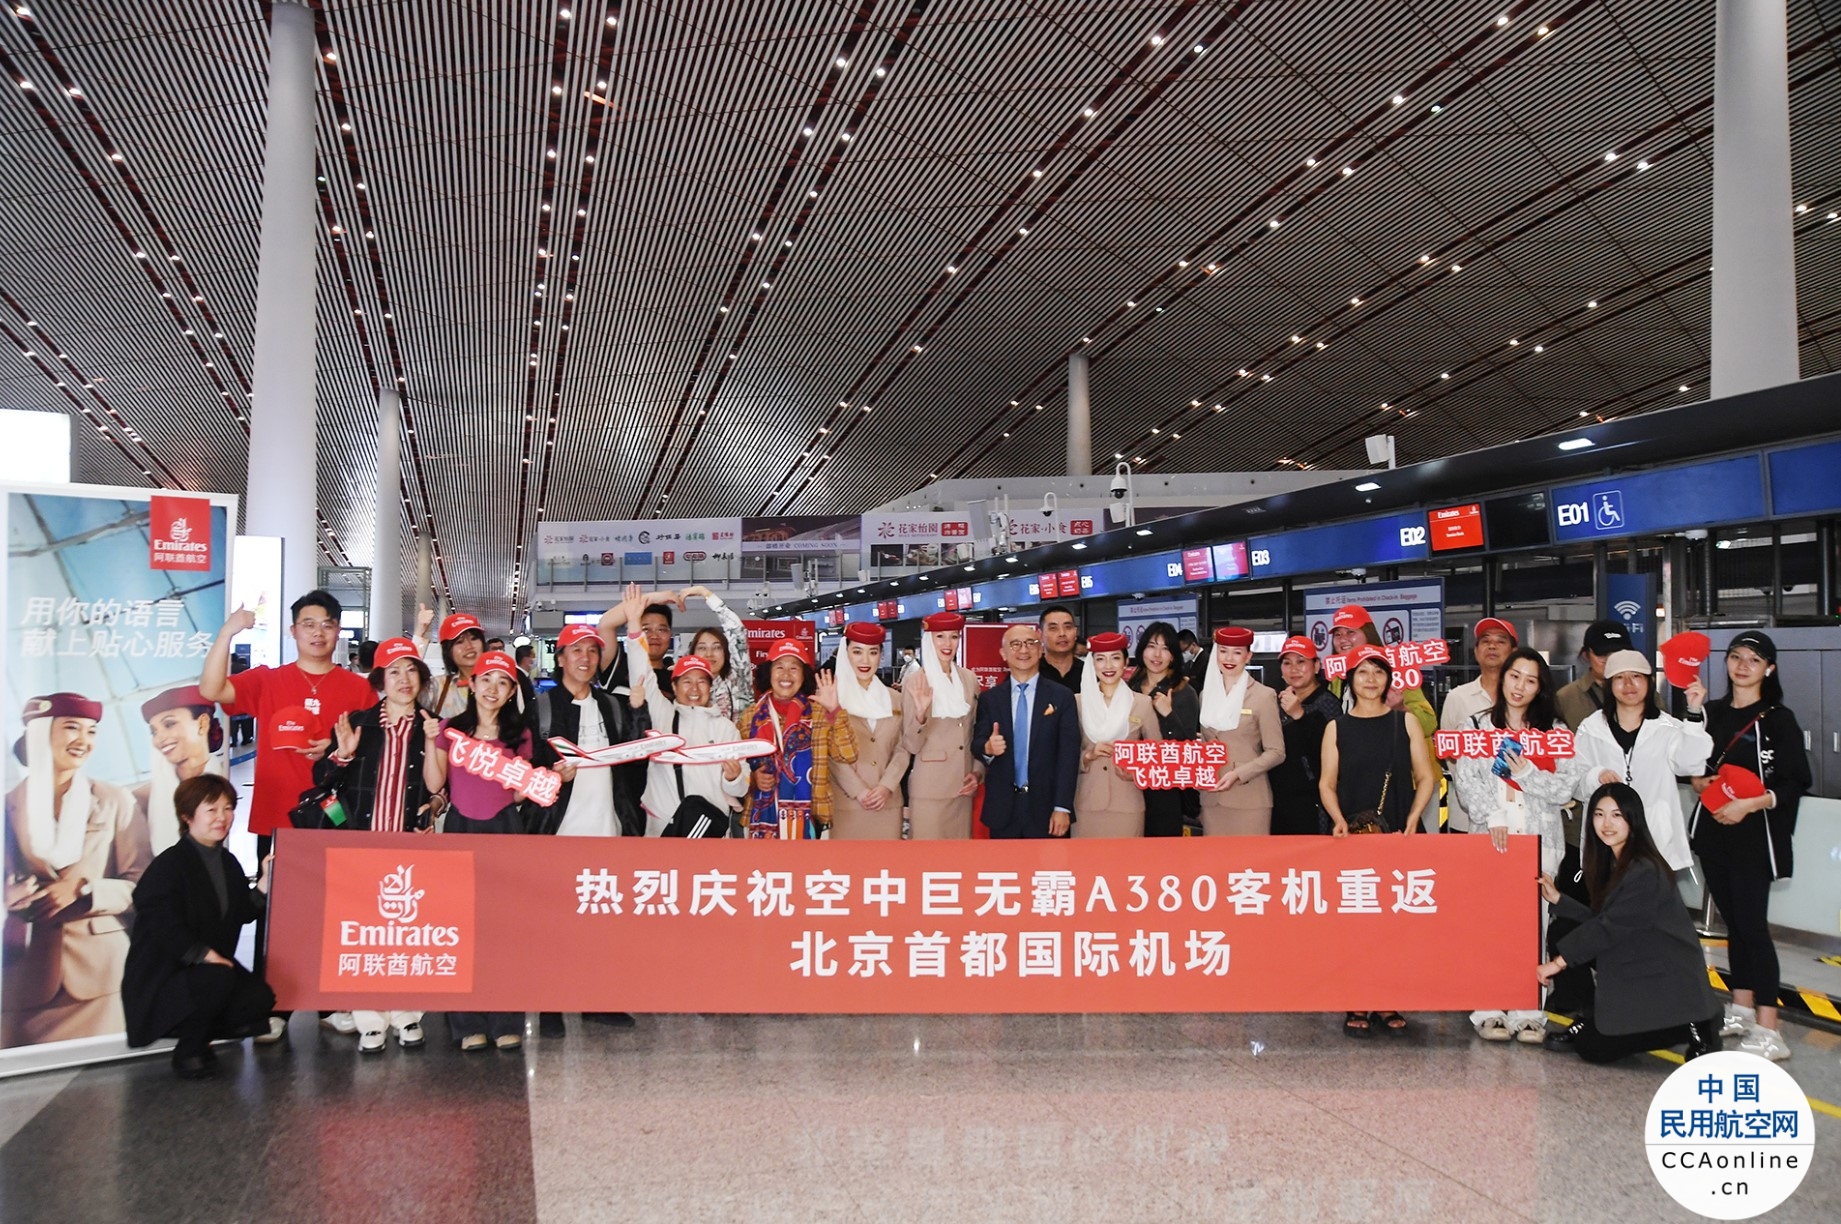 阿联酋航空A380旗舰客机重返北京 中国内地航班9月起增至每周35班